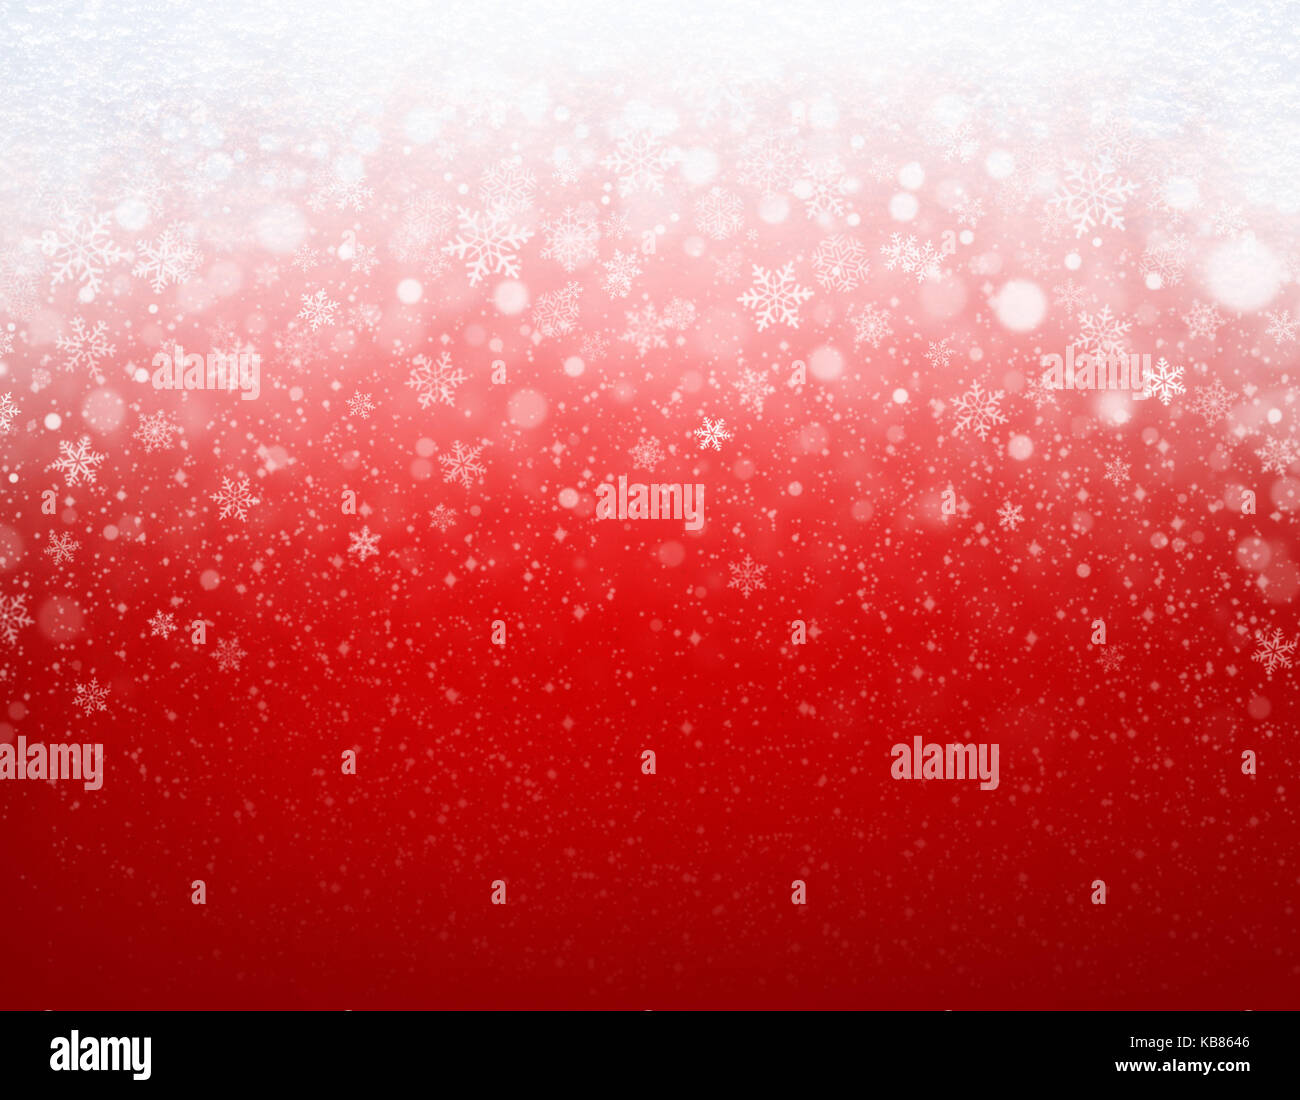 Schneeflocken Formen und Schneefall auf einem gefrorenen roten Hintergrund - Weihnachten Dekoration Stockfoto